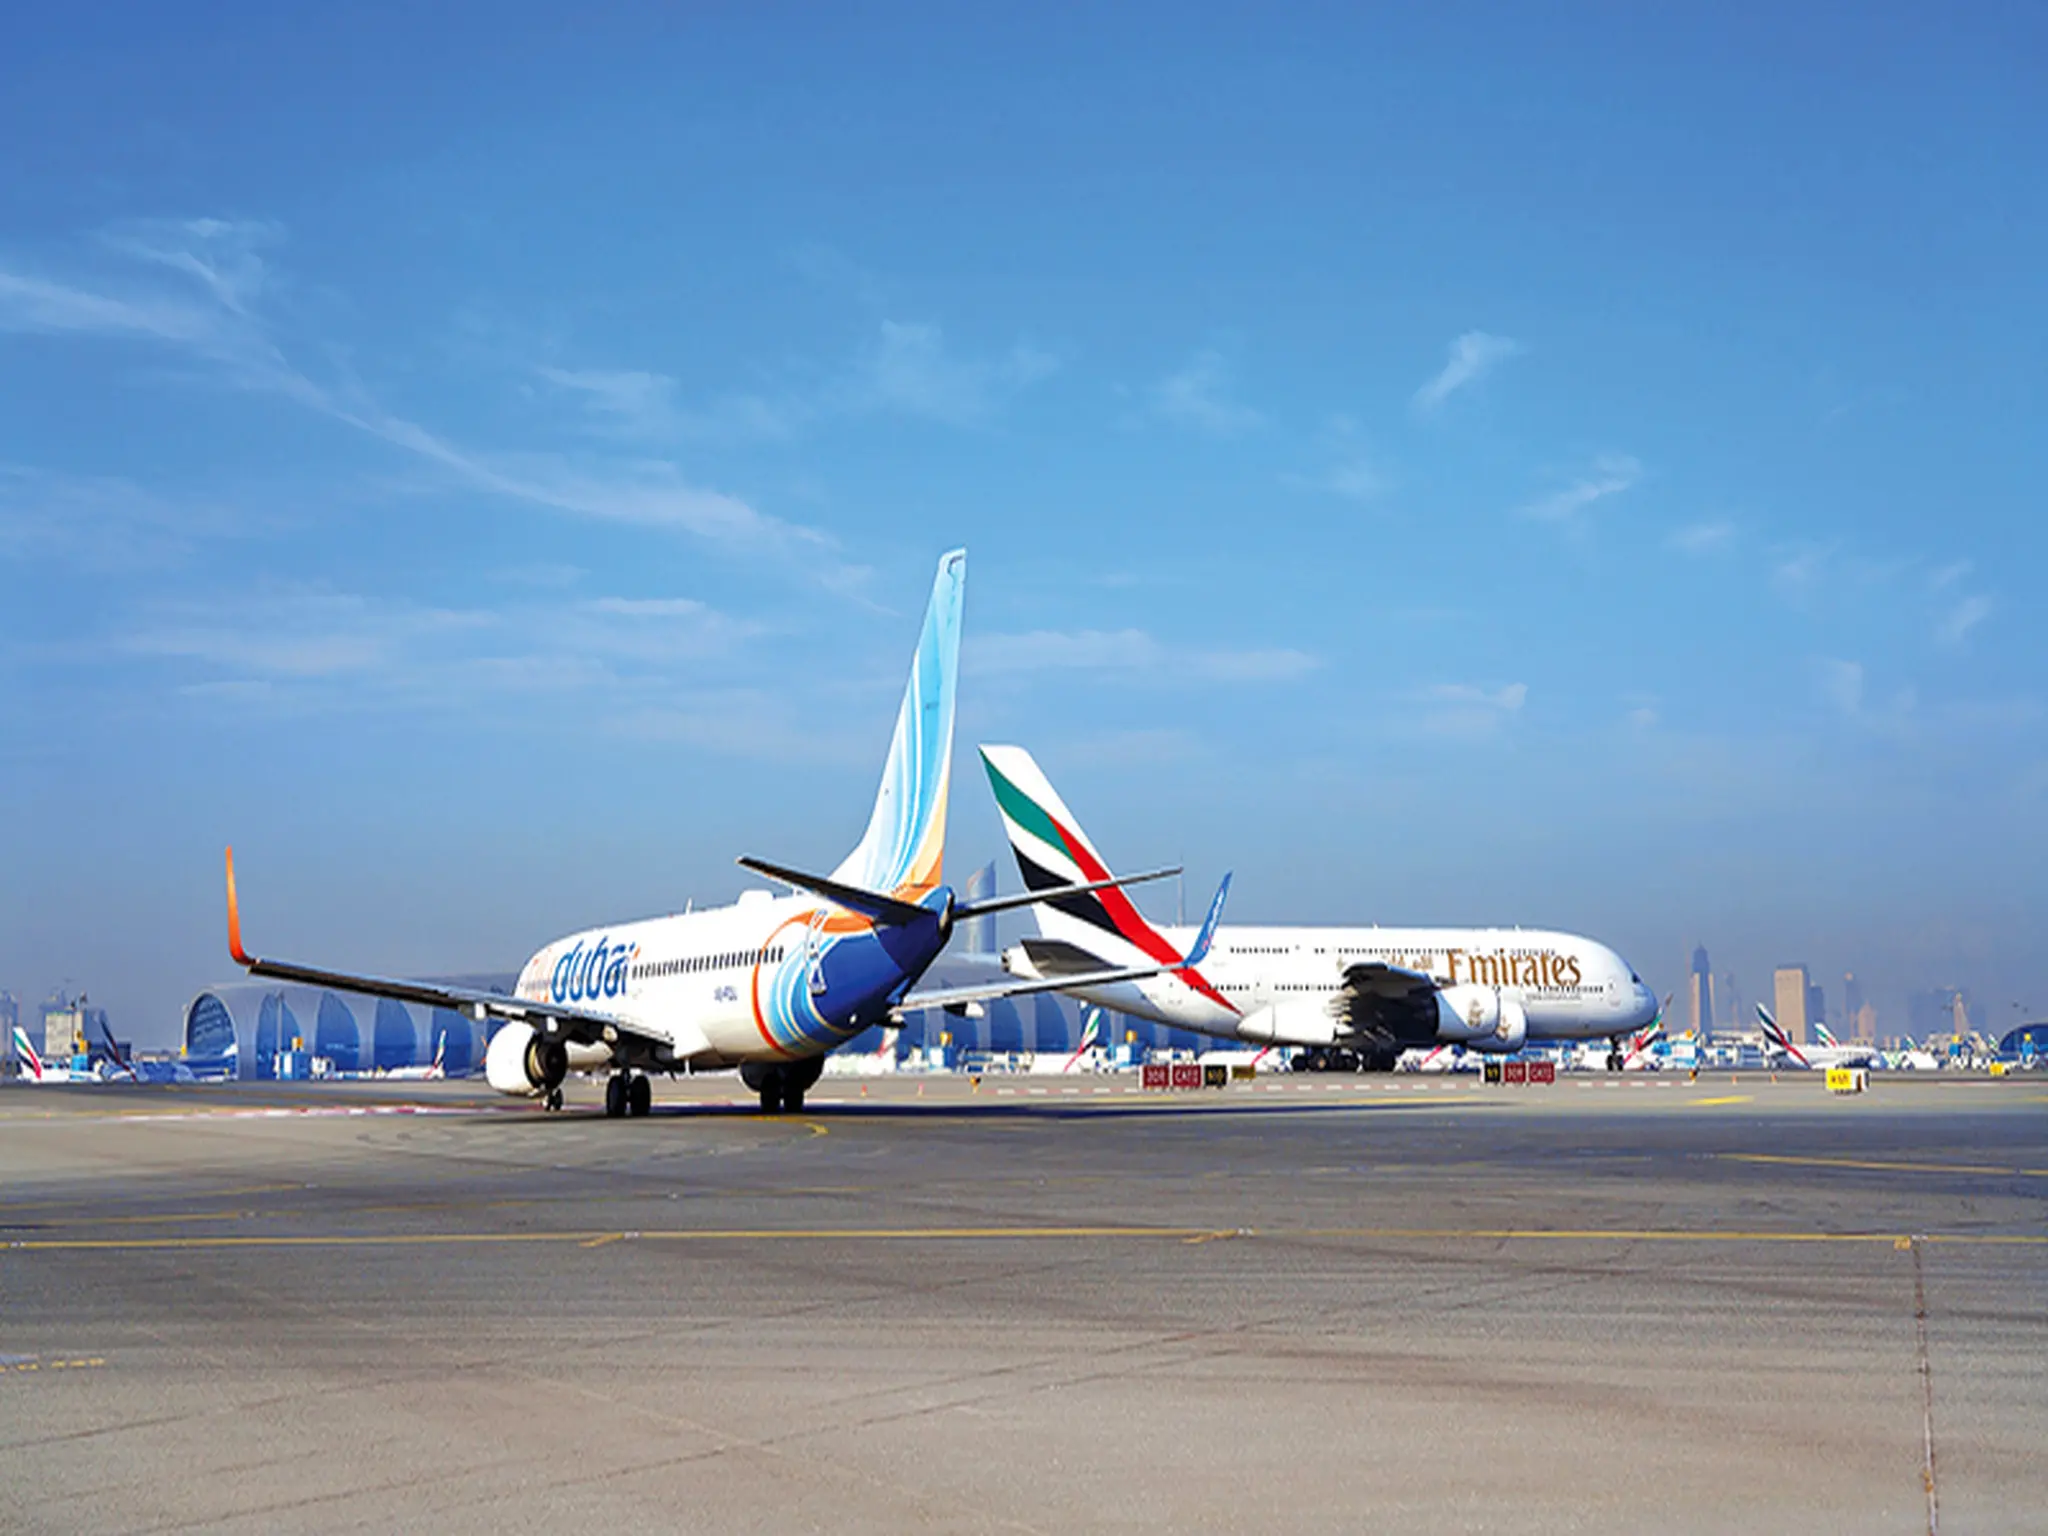 Urgent.. Statement from "Emirates" and "flydubai" regarding their international flights